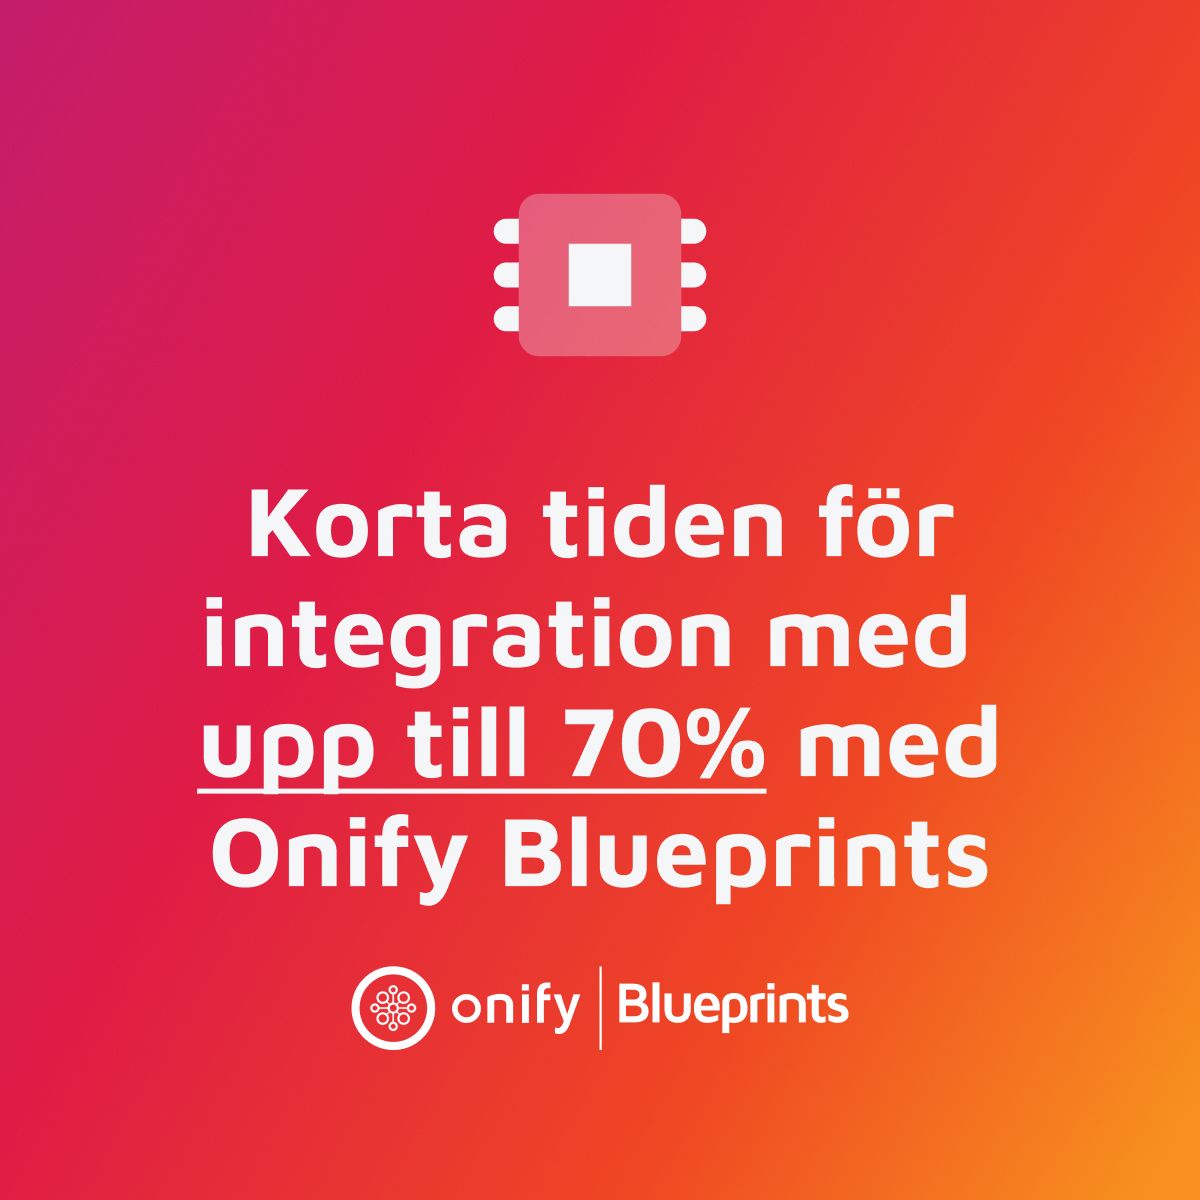 Korta tiden för integraion med upp till 70% med Onify Blueprints